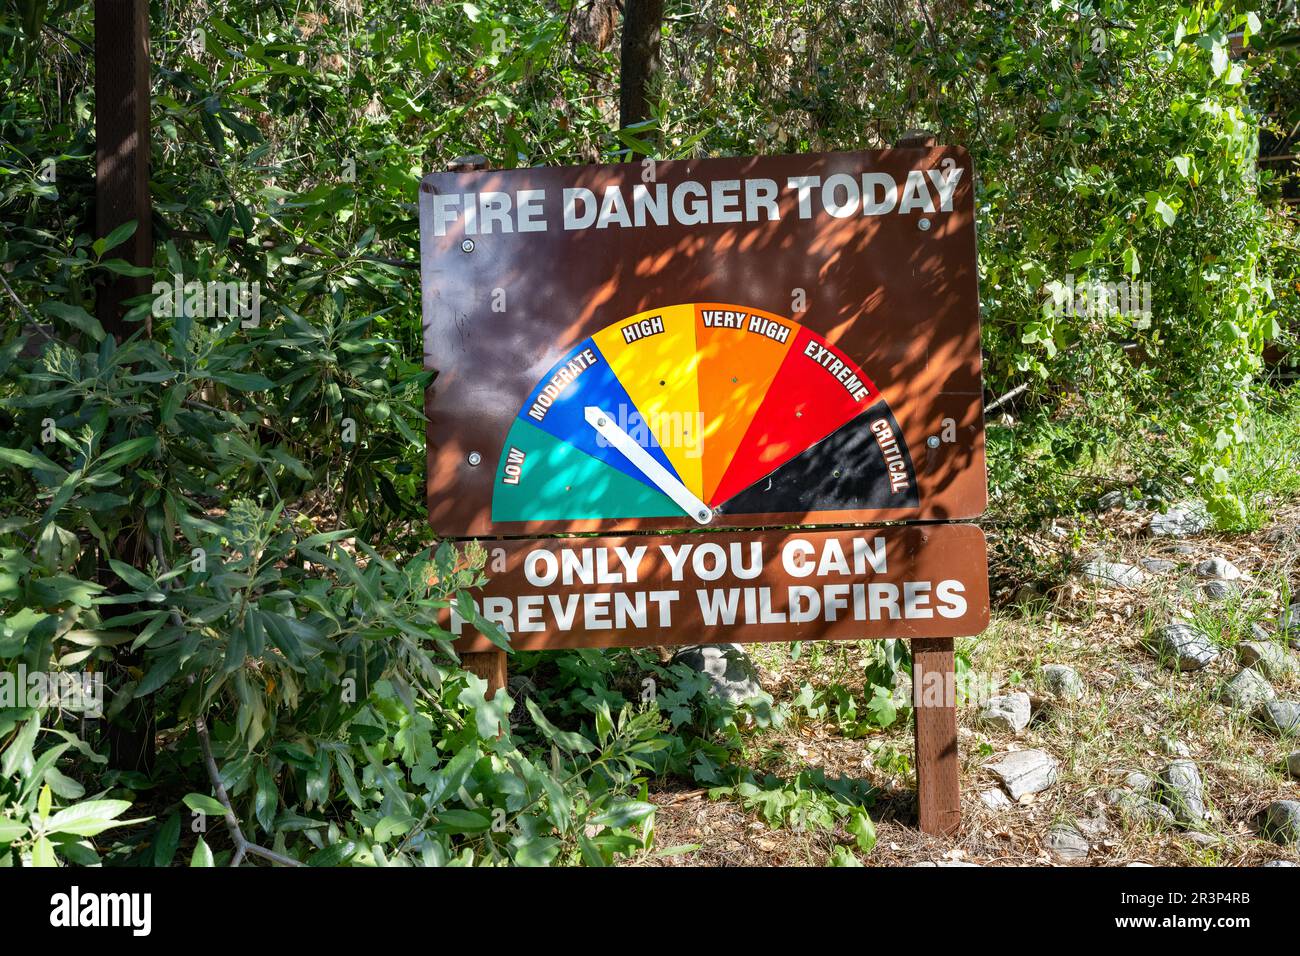 Fire Danger Level warning sign Stock Photo